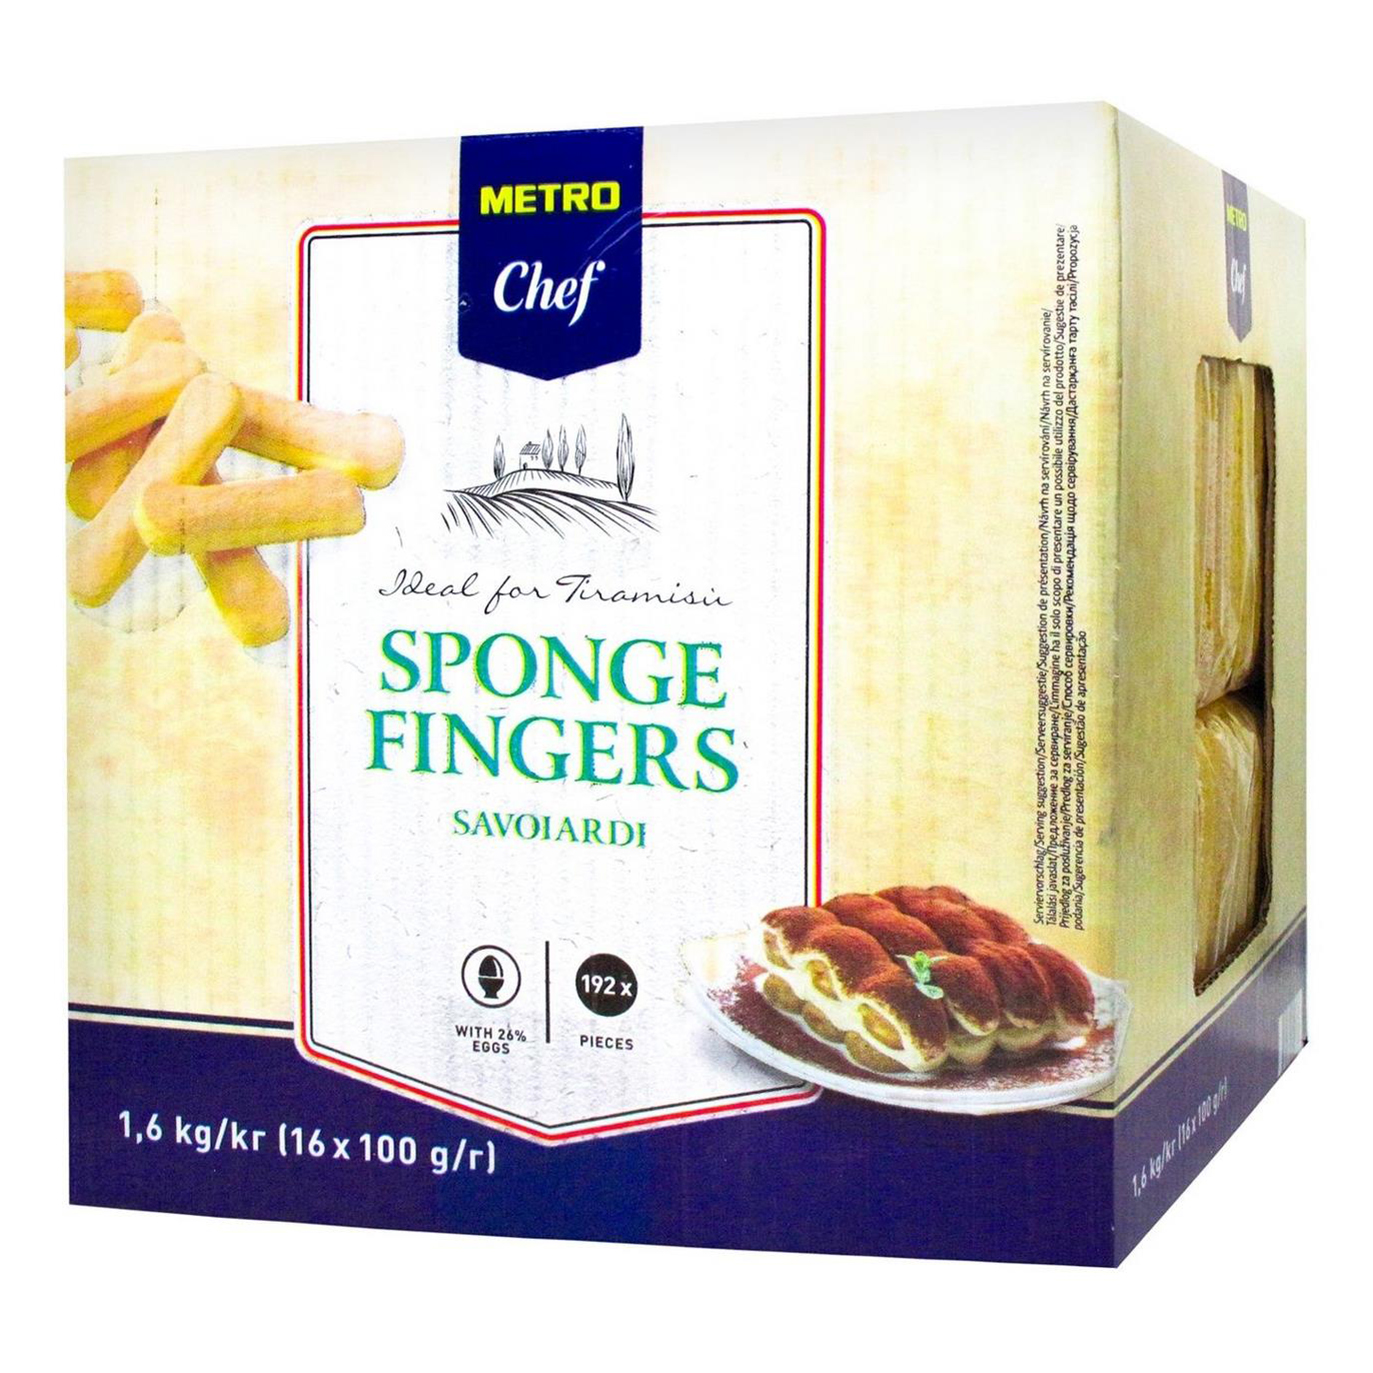 Печенье Metro Chef Sponge Fingers Savoiardi бисквитное 1,6 кг